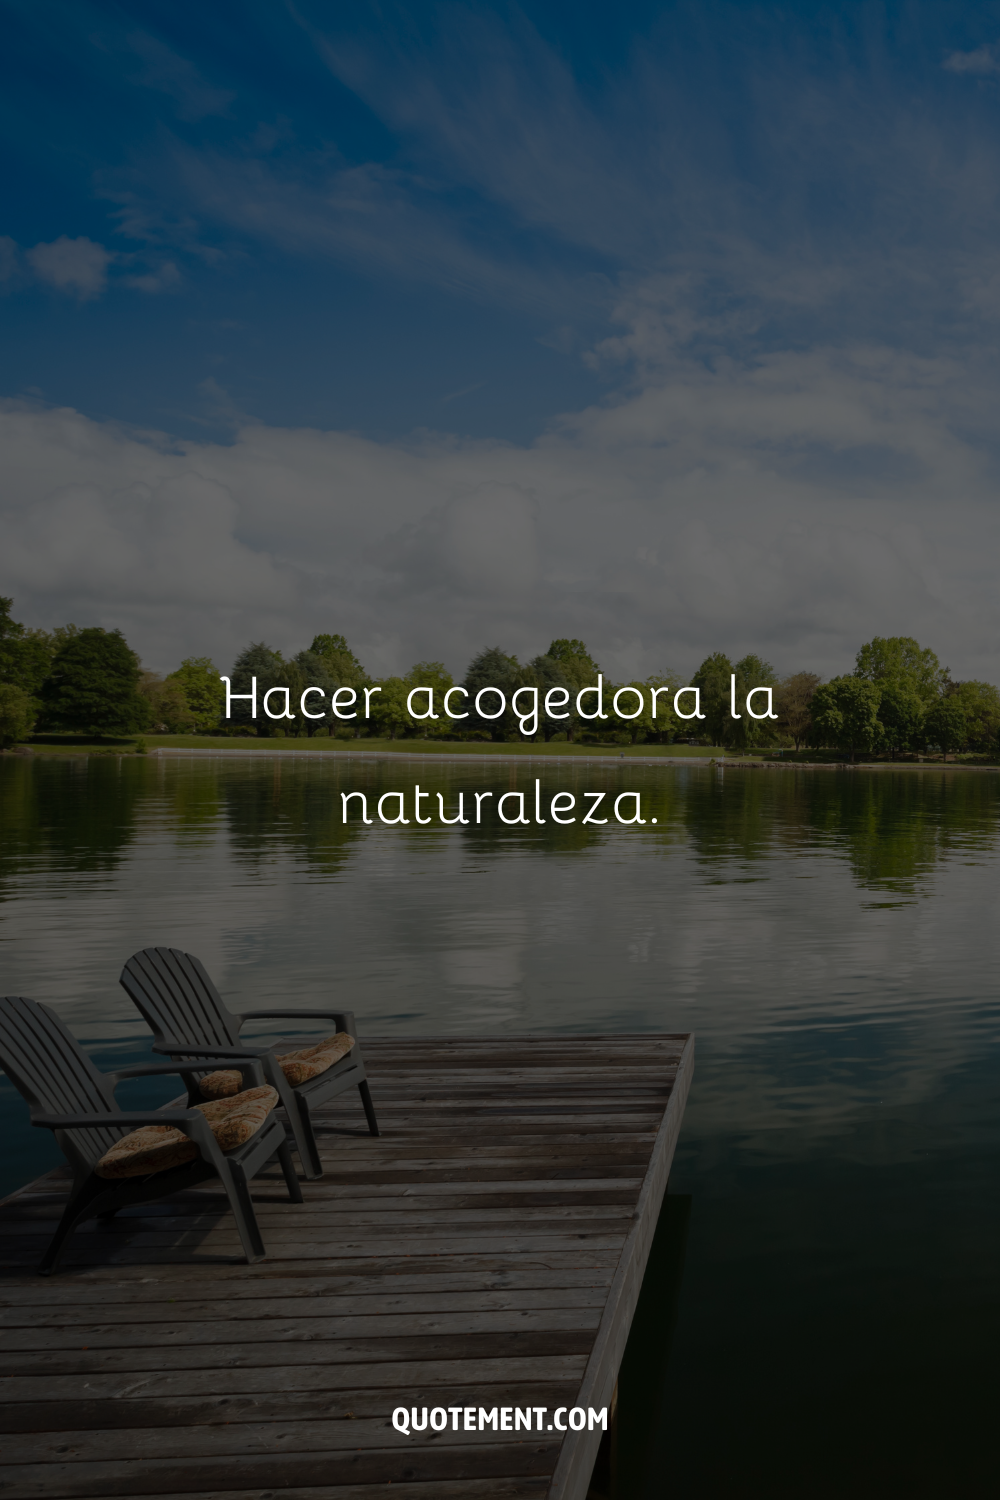 disfrutando junto al lago representando lake caption for instagram